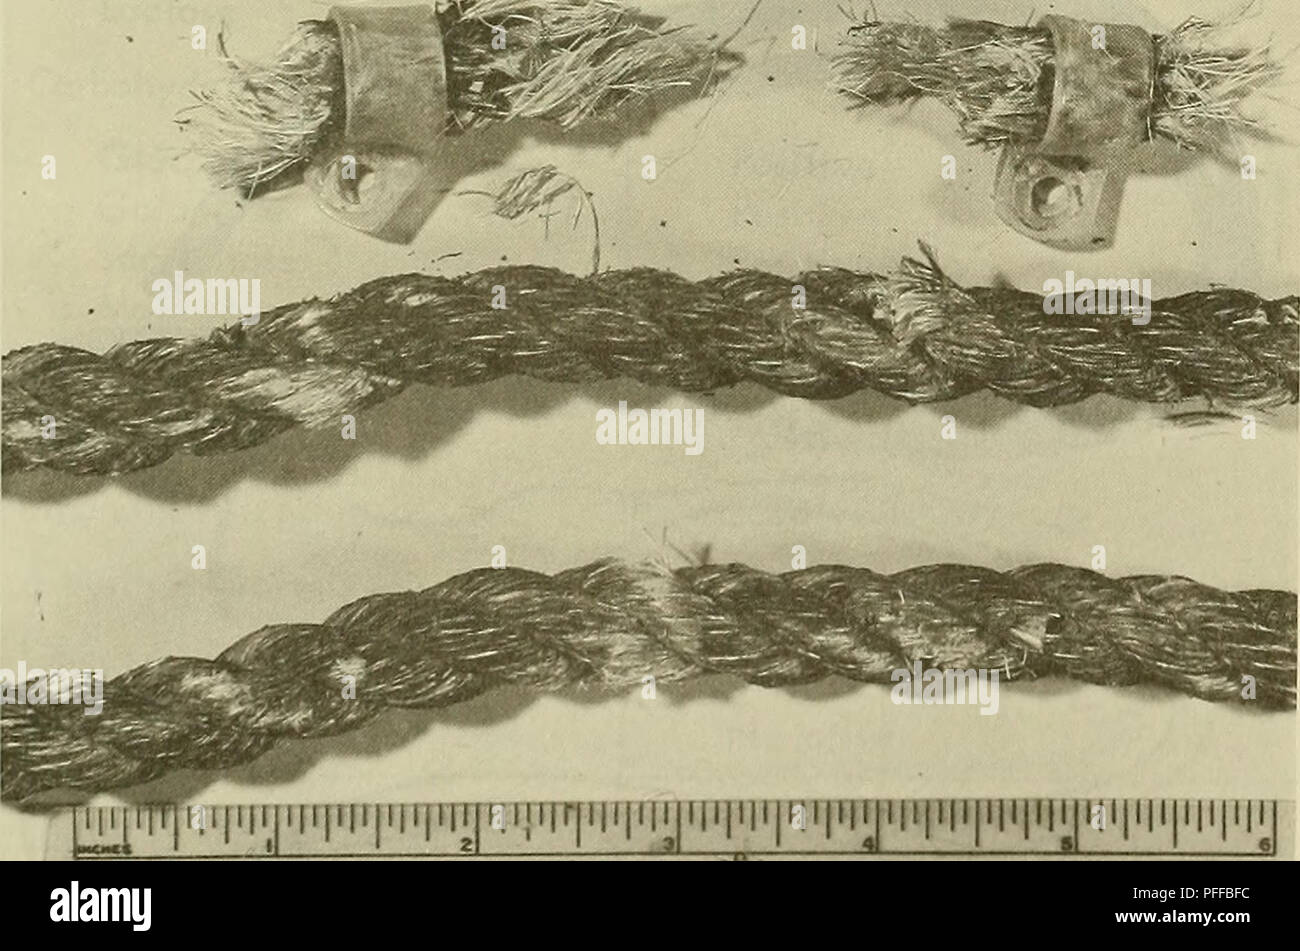 . Océano profundo biodeterioro de materiales. Materiales; sedimentos marinos. Figura 22. Cuerda de algodón seriamente deteriorada por microorganismos marinos. [De[l|[jl|tfIfl|l|lfirr|l|ljl|T|l|l[L|yni|llT]TlT]TTyrF|TTT|T1T]TTIJ Figura 23. Las secciones cortas de 4 pies de largo de cuerda manilo espécimen fueron recuperados después de ser expuesta en el sedimento. Espécimen inferior fue expuesto 3 pies por encima del sedimento. 29. Por favor tenga en cuenta que estas imágenes son extraídas de la página escaneada imágenes que podrían haber sido mejoradas digitalmente para mejorar la legibilidad, la coloración y el aspecto de estas ilustraciones pueden no parecerse perfectamente a el origen Foto de stock